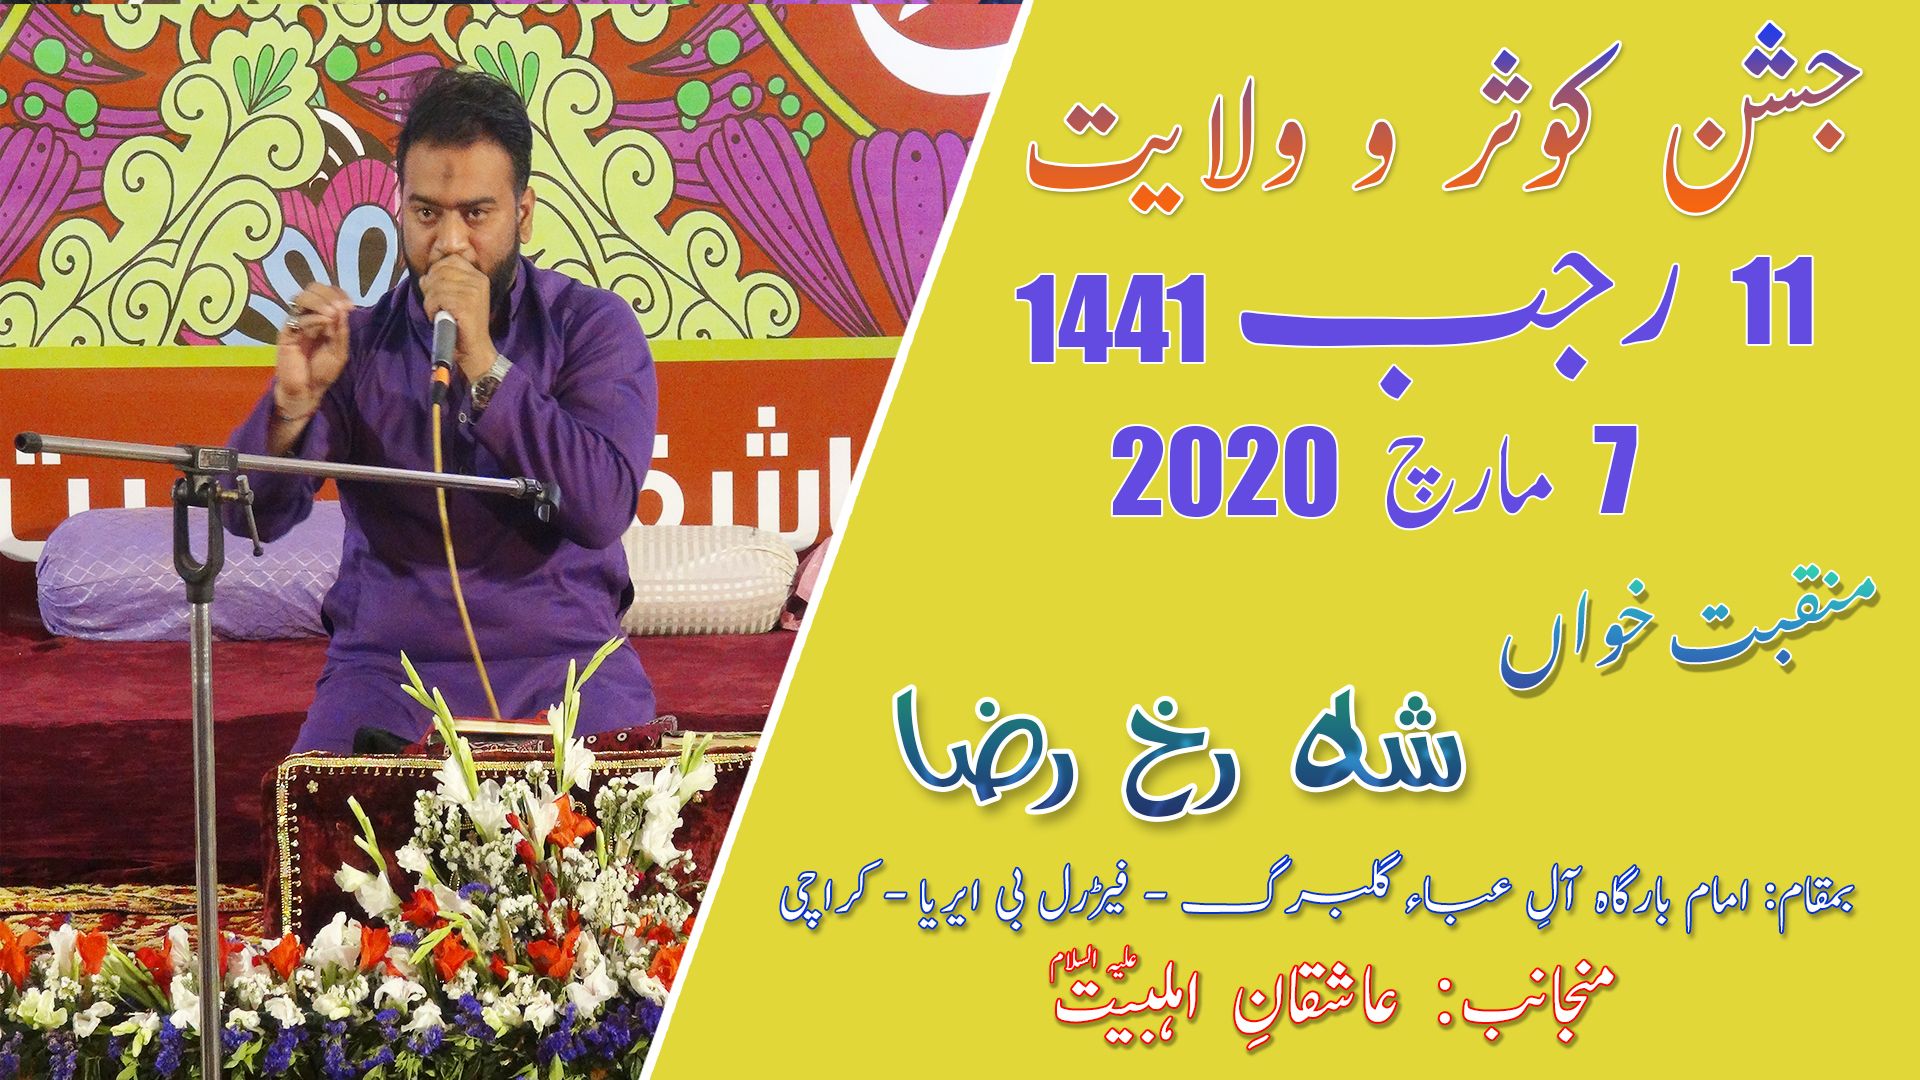 Manqabat | Shahrukh Raza | Jashan-e-Kausar - 11 Rajab 2020 - Imam Bargah Aleyaba - Karachi